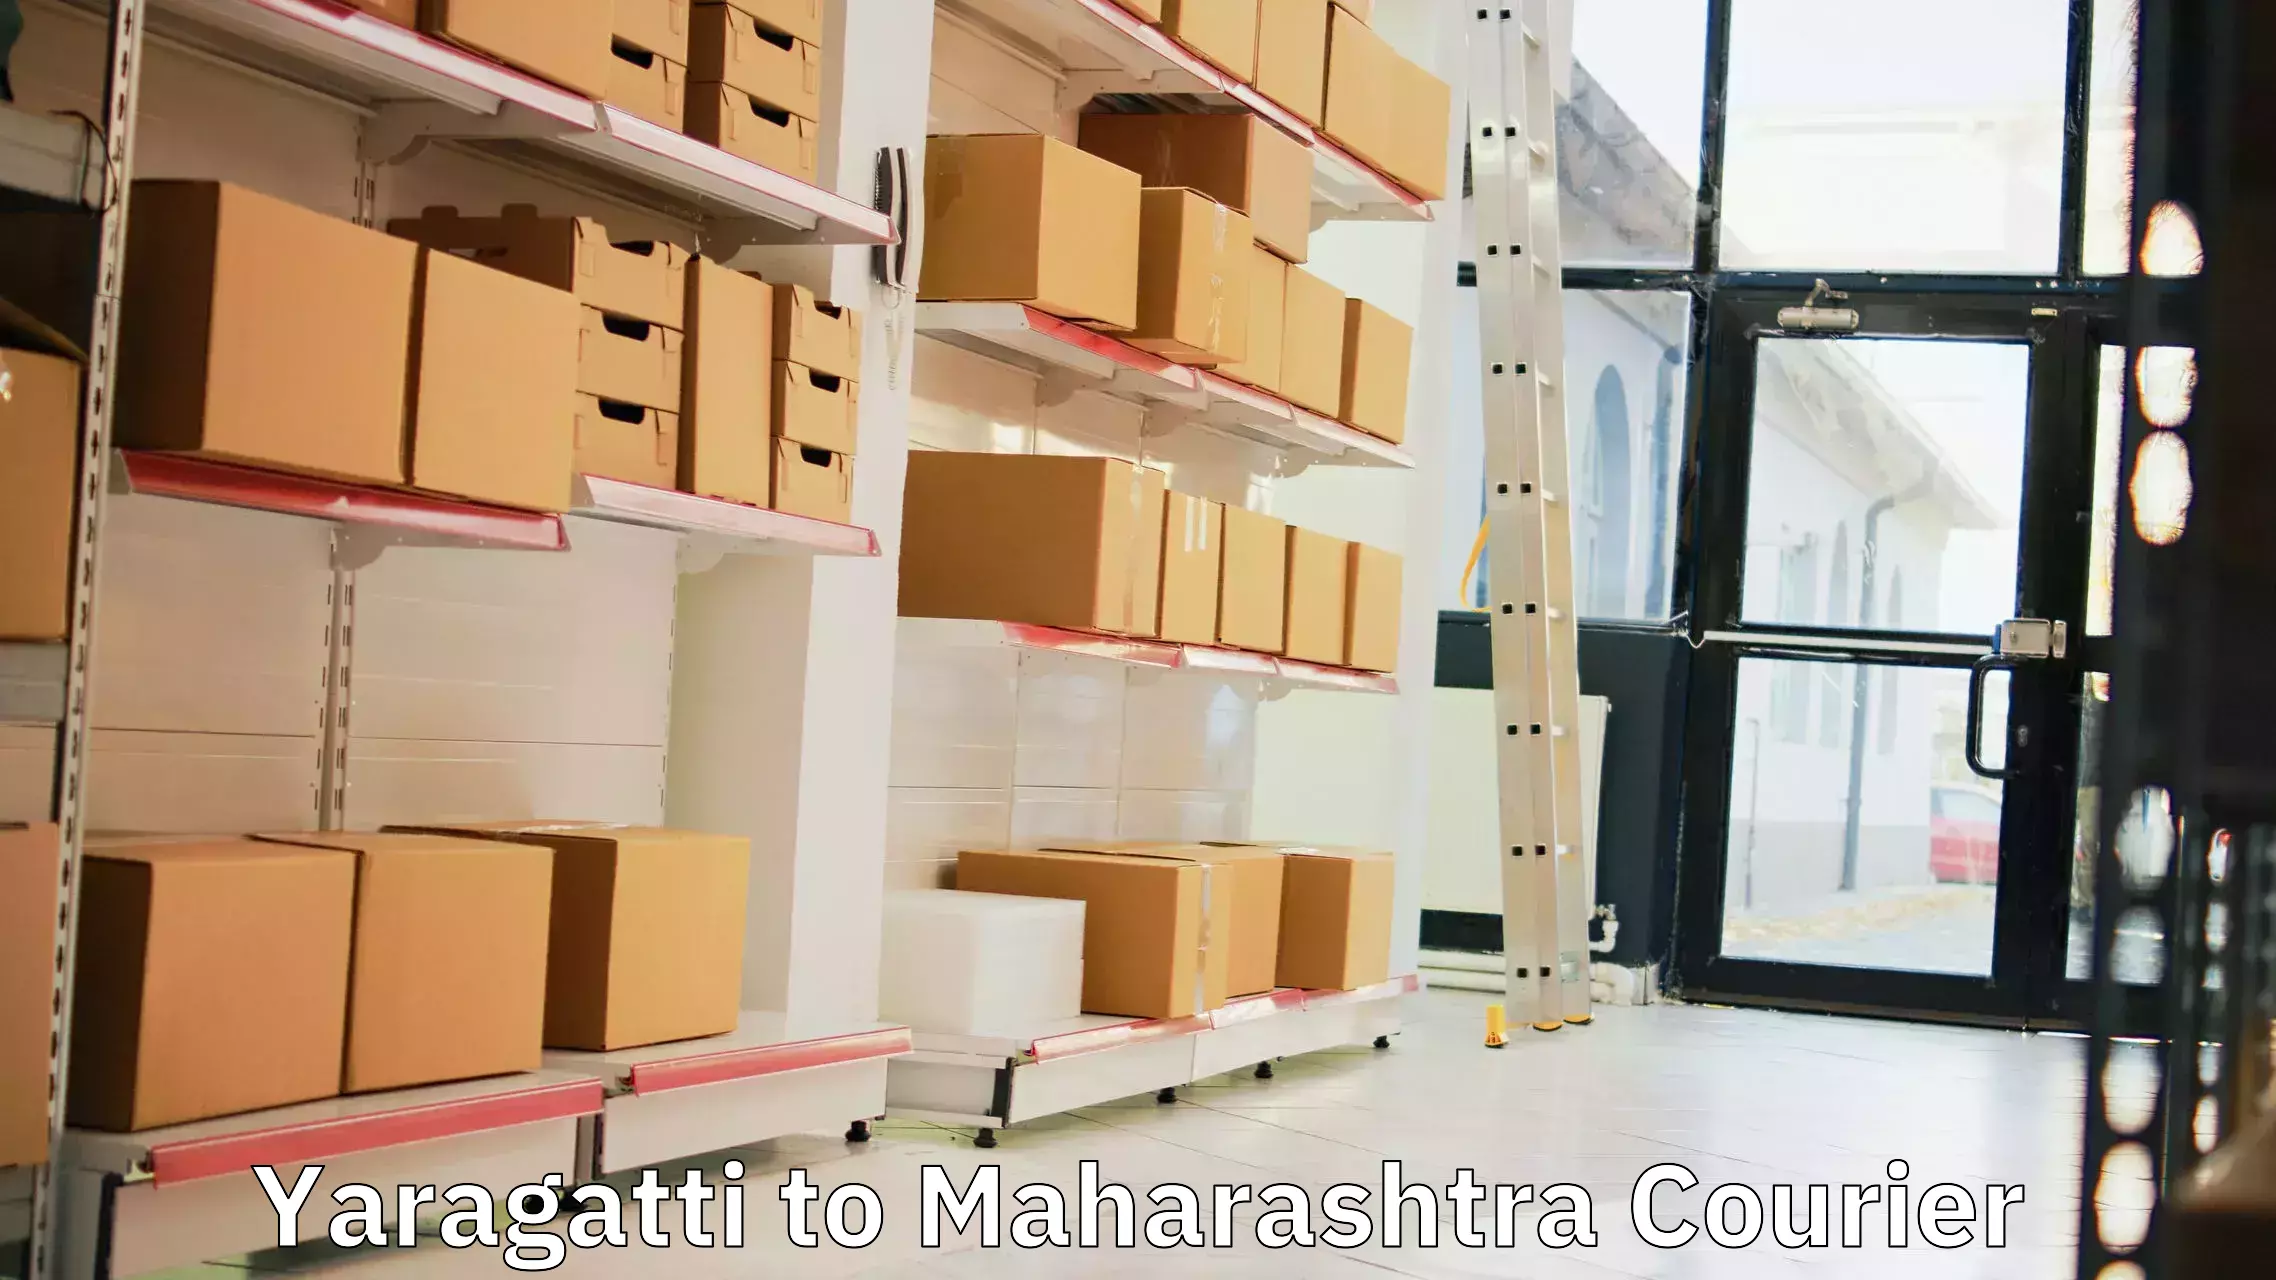 Retail shipping solutions Yaragatti to Shrigonda